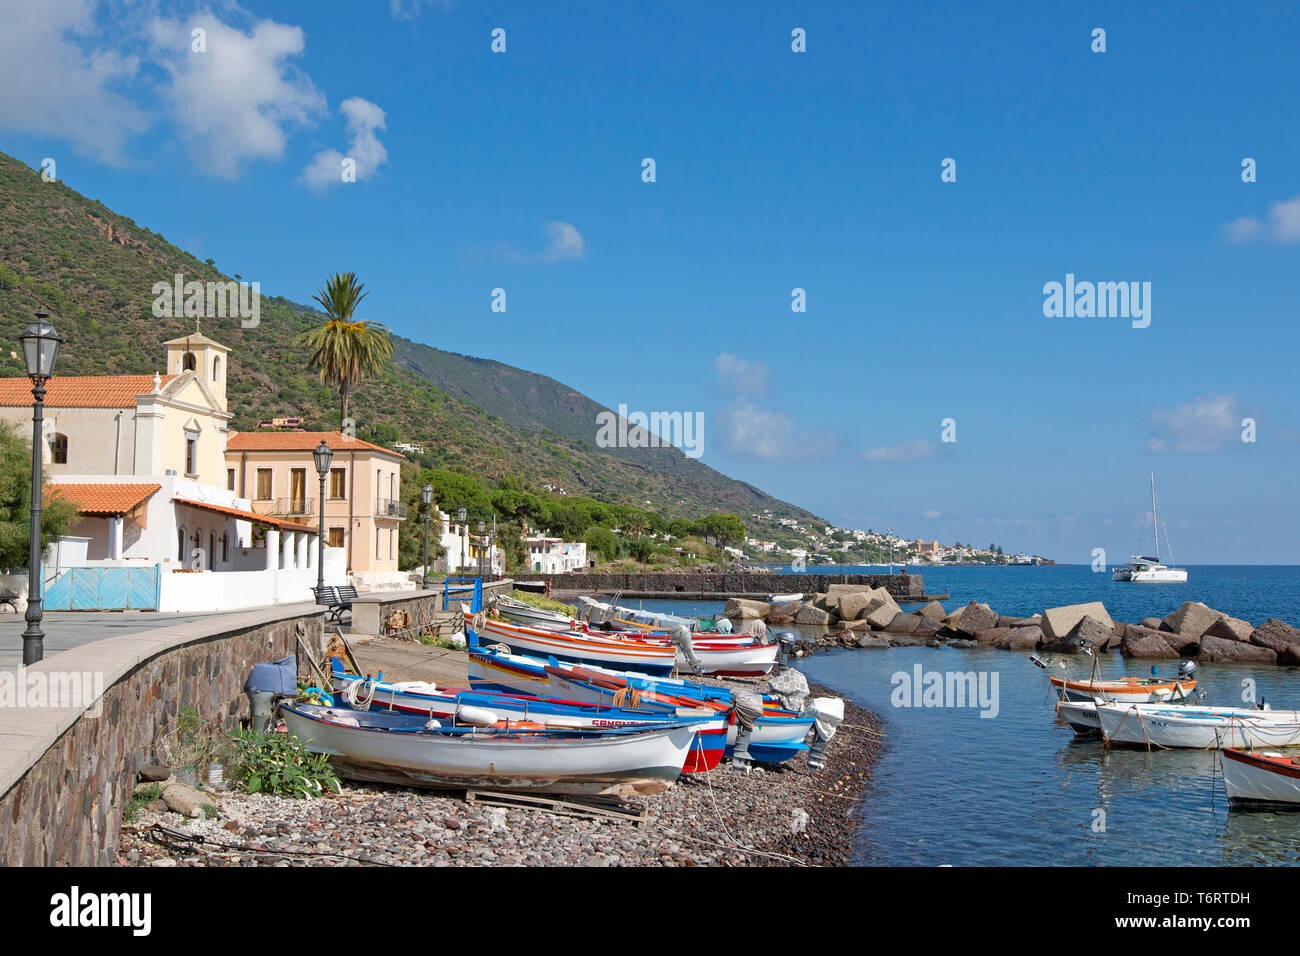 Barcos de pesca en la playa de Lingua, Salina, las Islas Eolias, el sitio de la UNESCO, fuera de la provincia de Messina, Sicilia, Italia Foto de stock